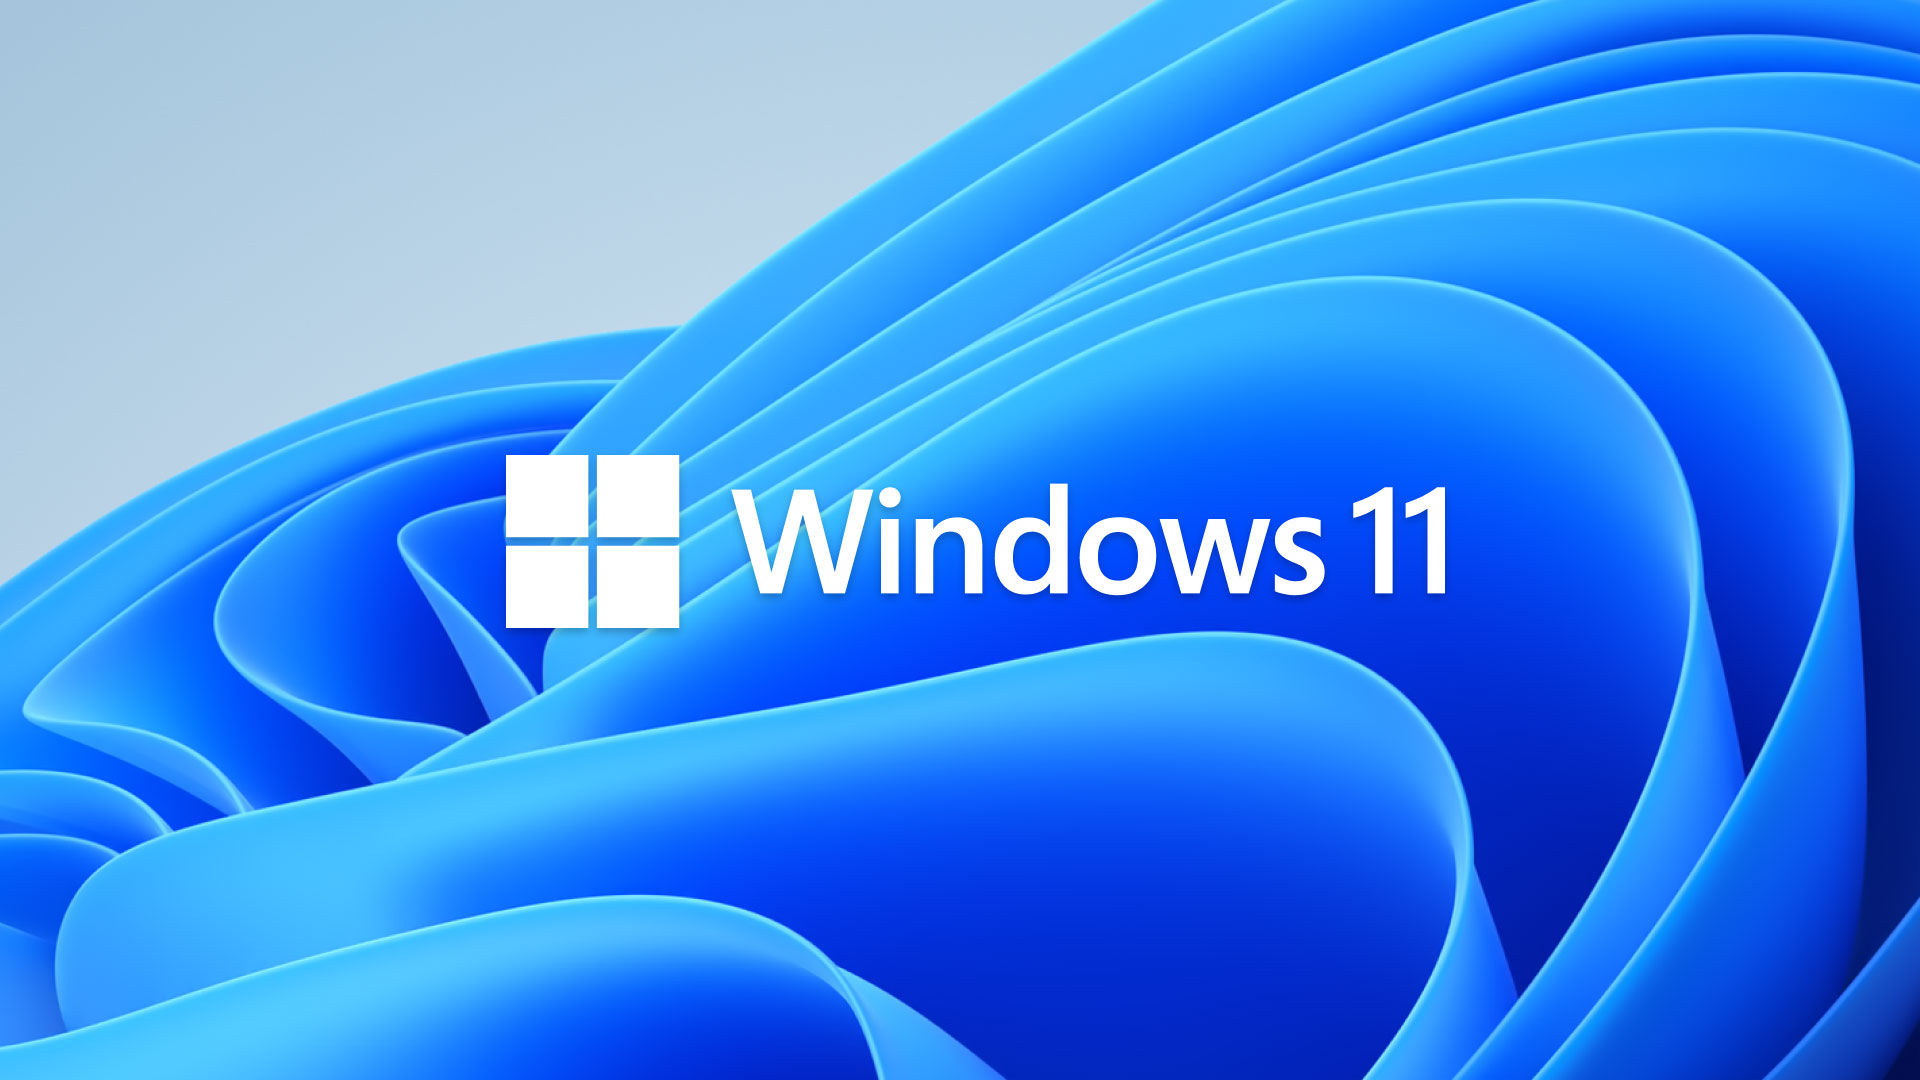 A Windows 11 Logo